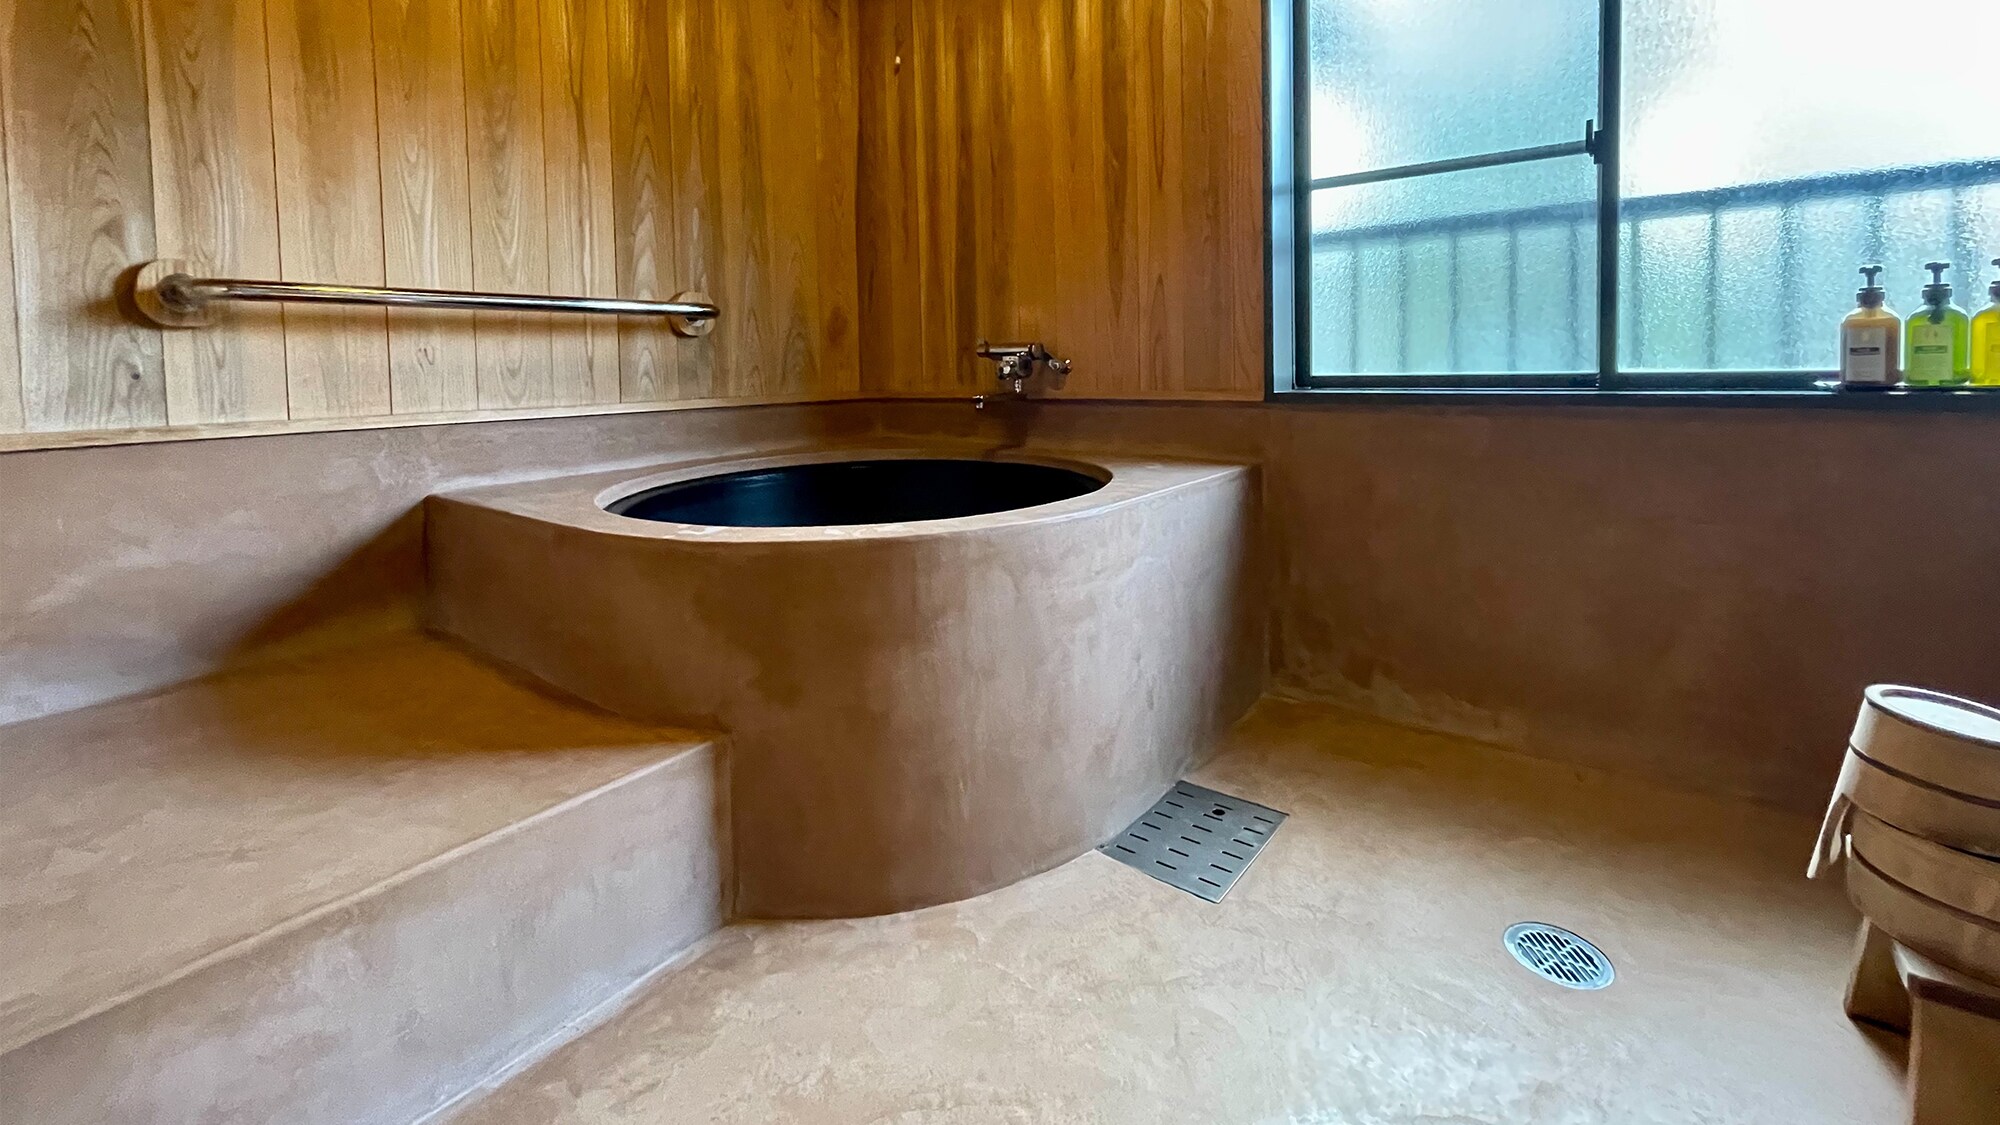 [Sakura-] 我們為室內浴場準備了五右衛門浴缸式浴缸。